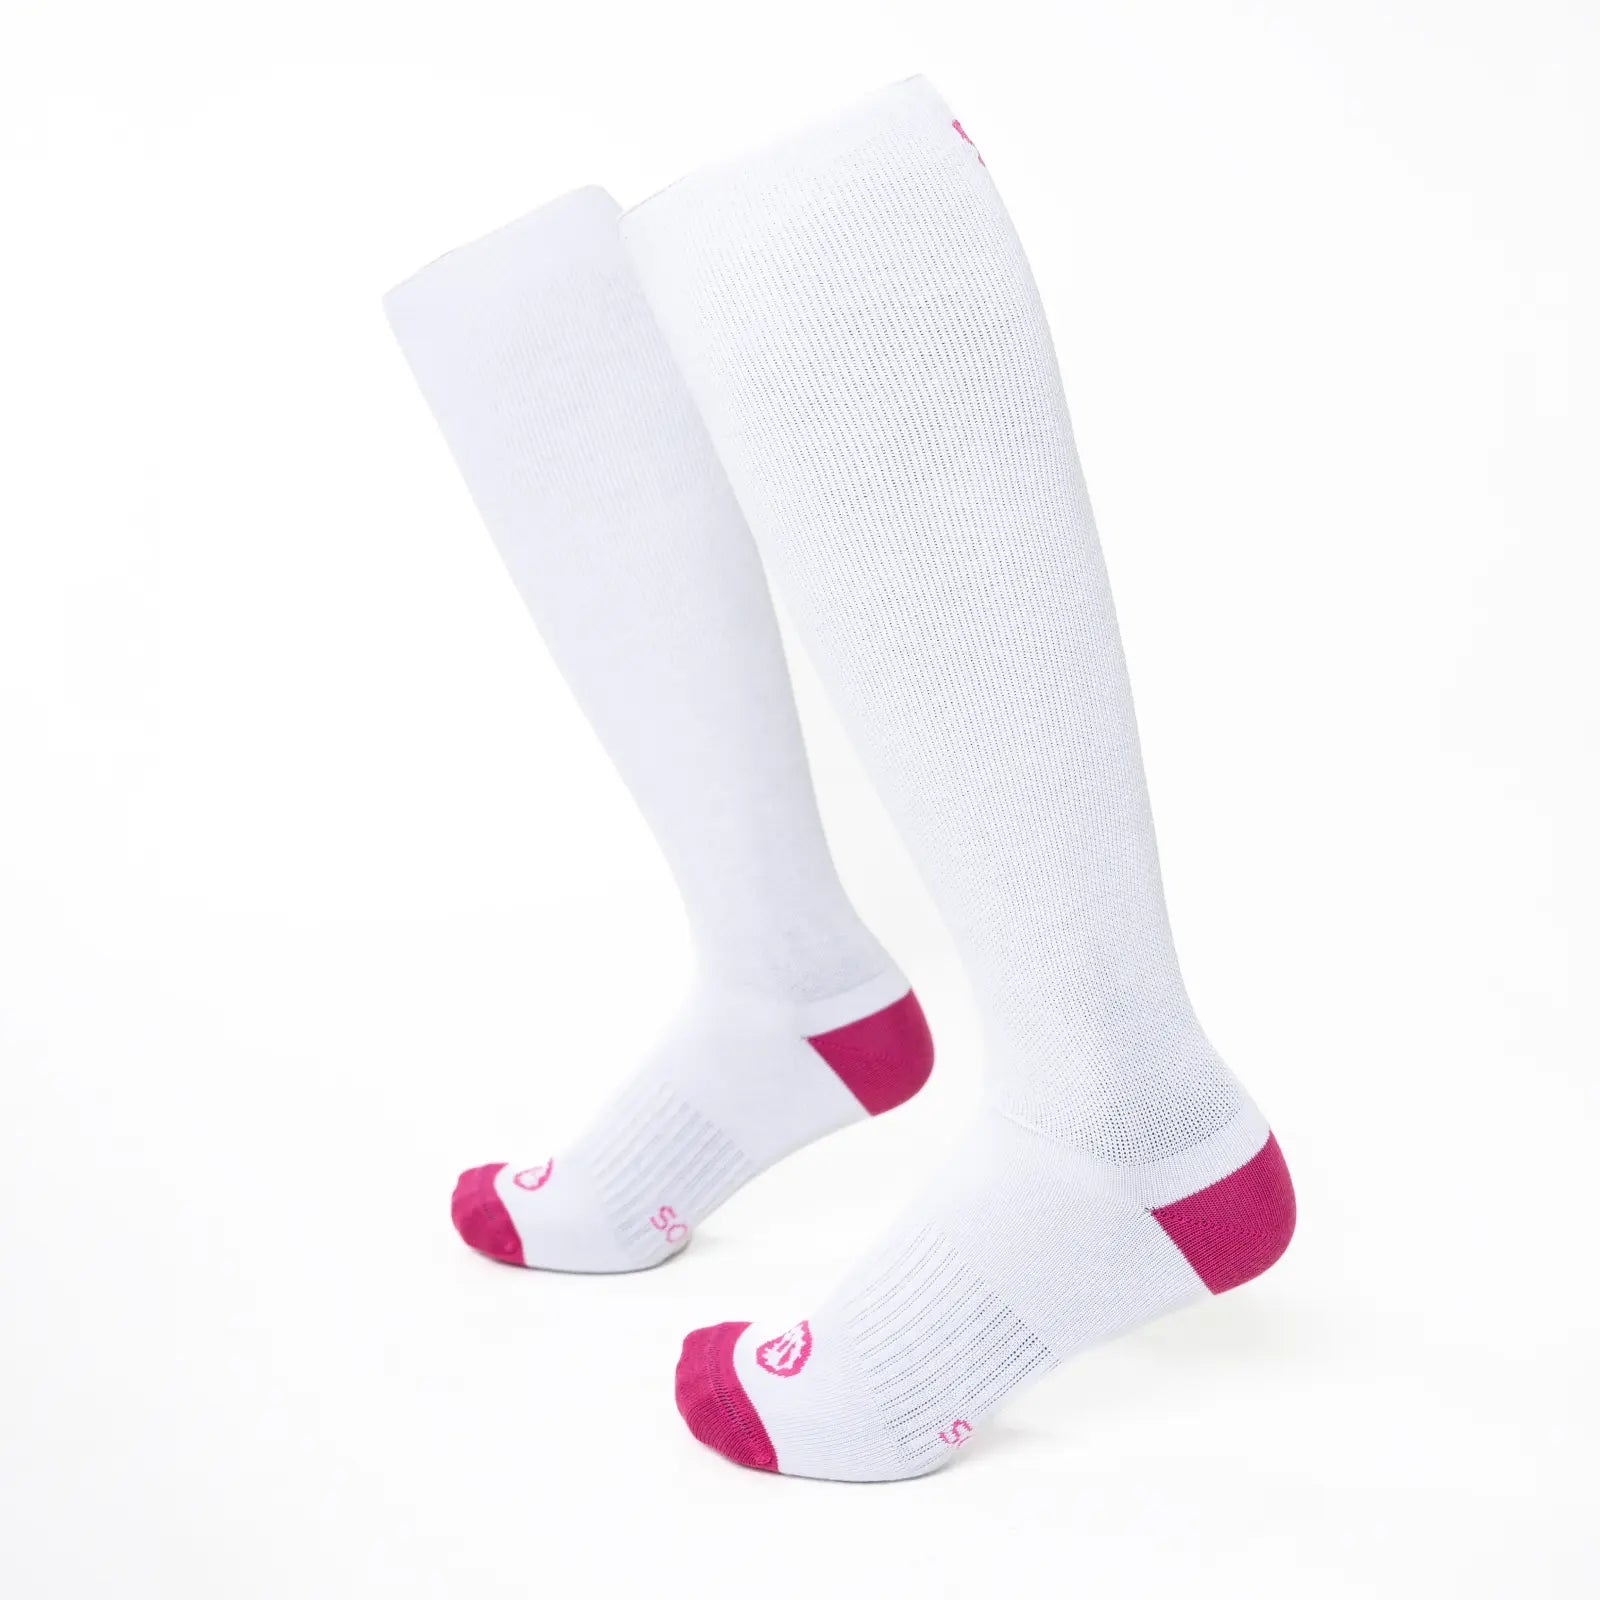 Par de calcetines altos compresivos de algodón color blanco y rosa fucsia